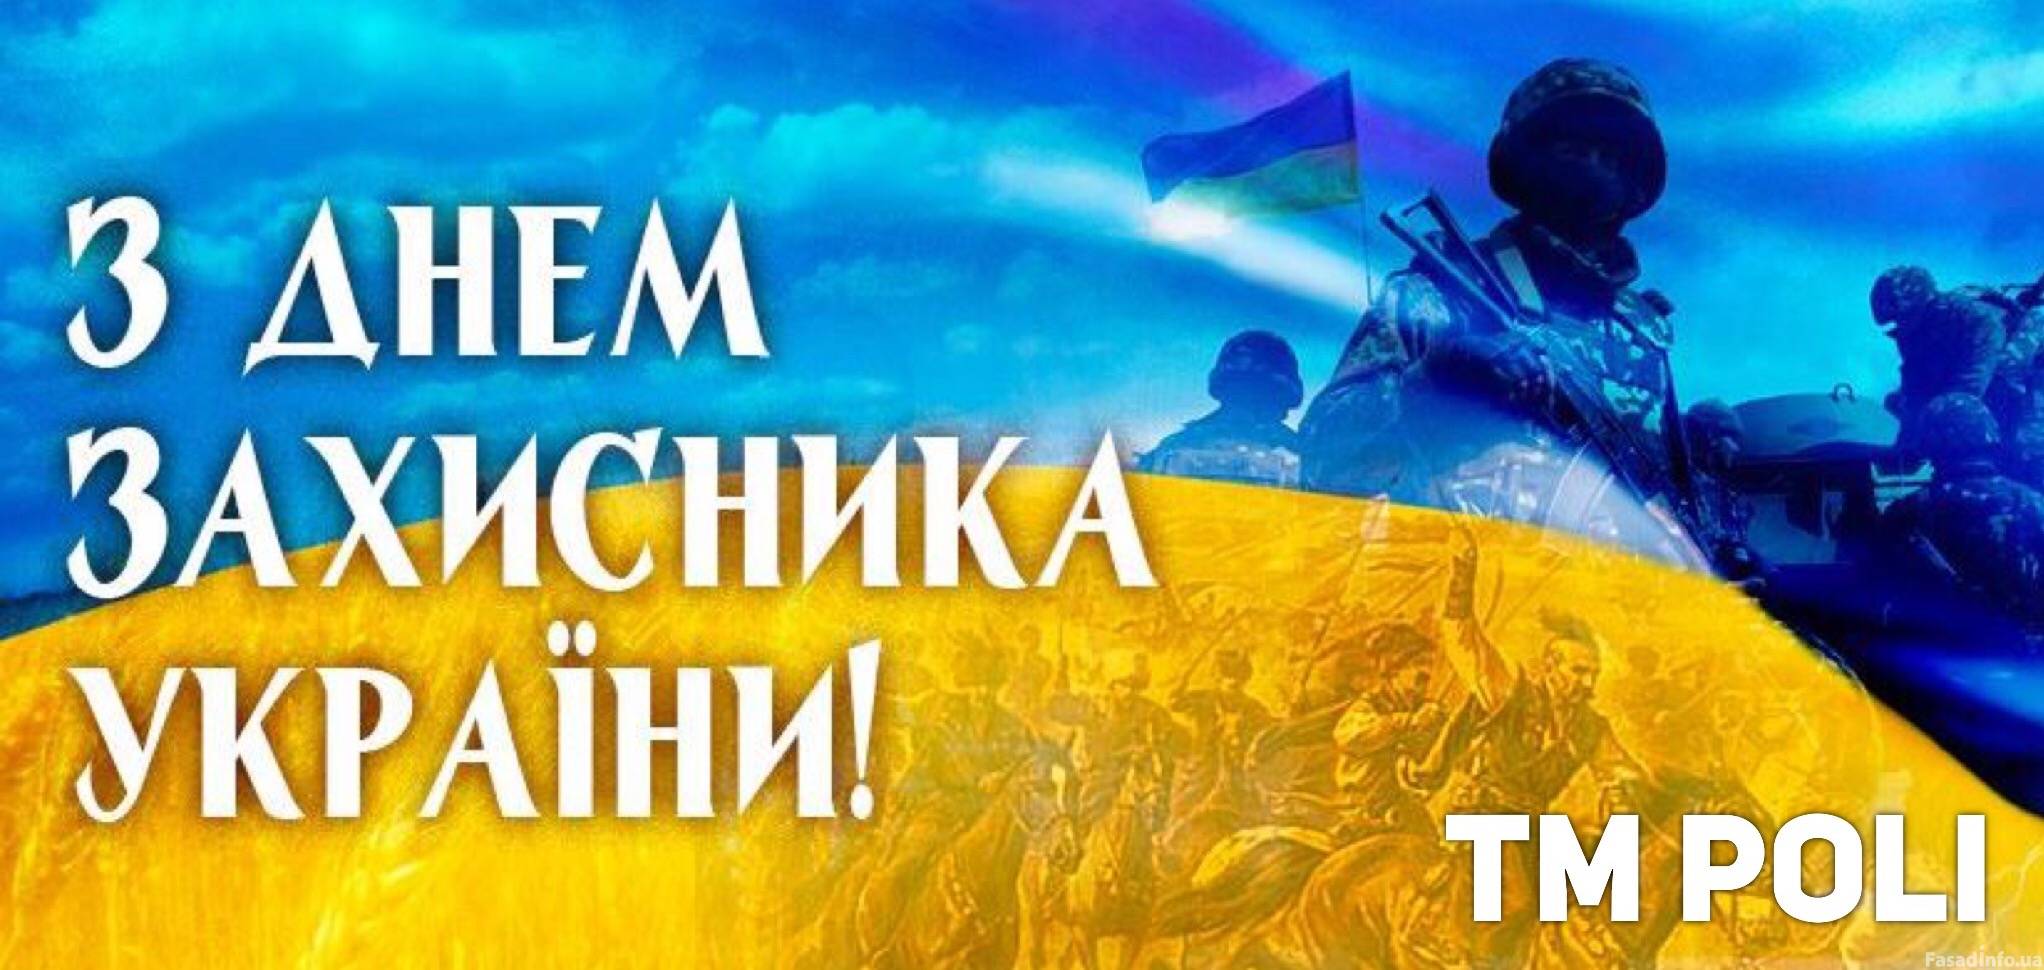 TM POLI поздравляет Вас Днем защитника Украины и Покрова Пресвятой Богородицы!